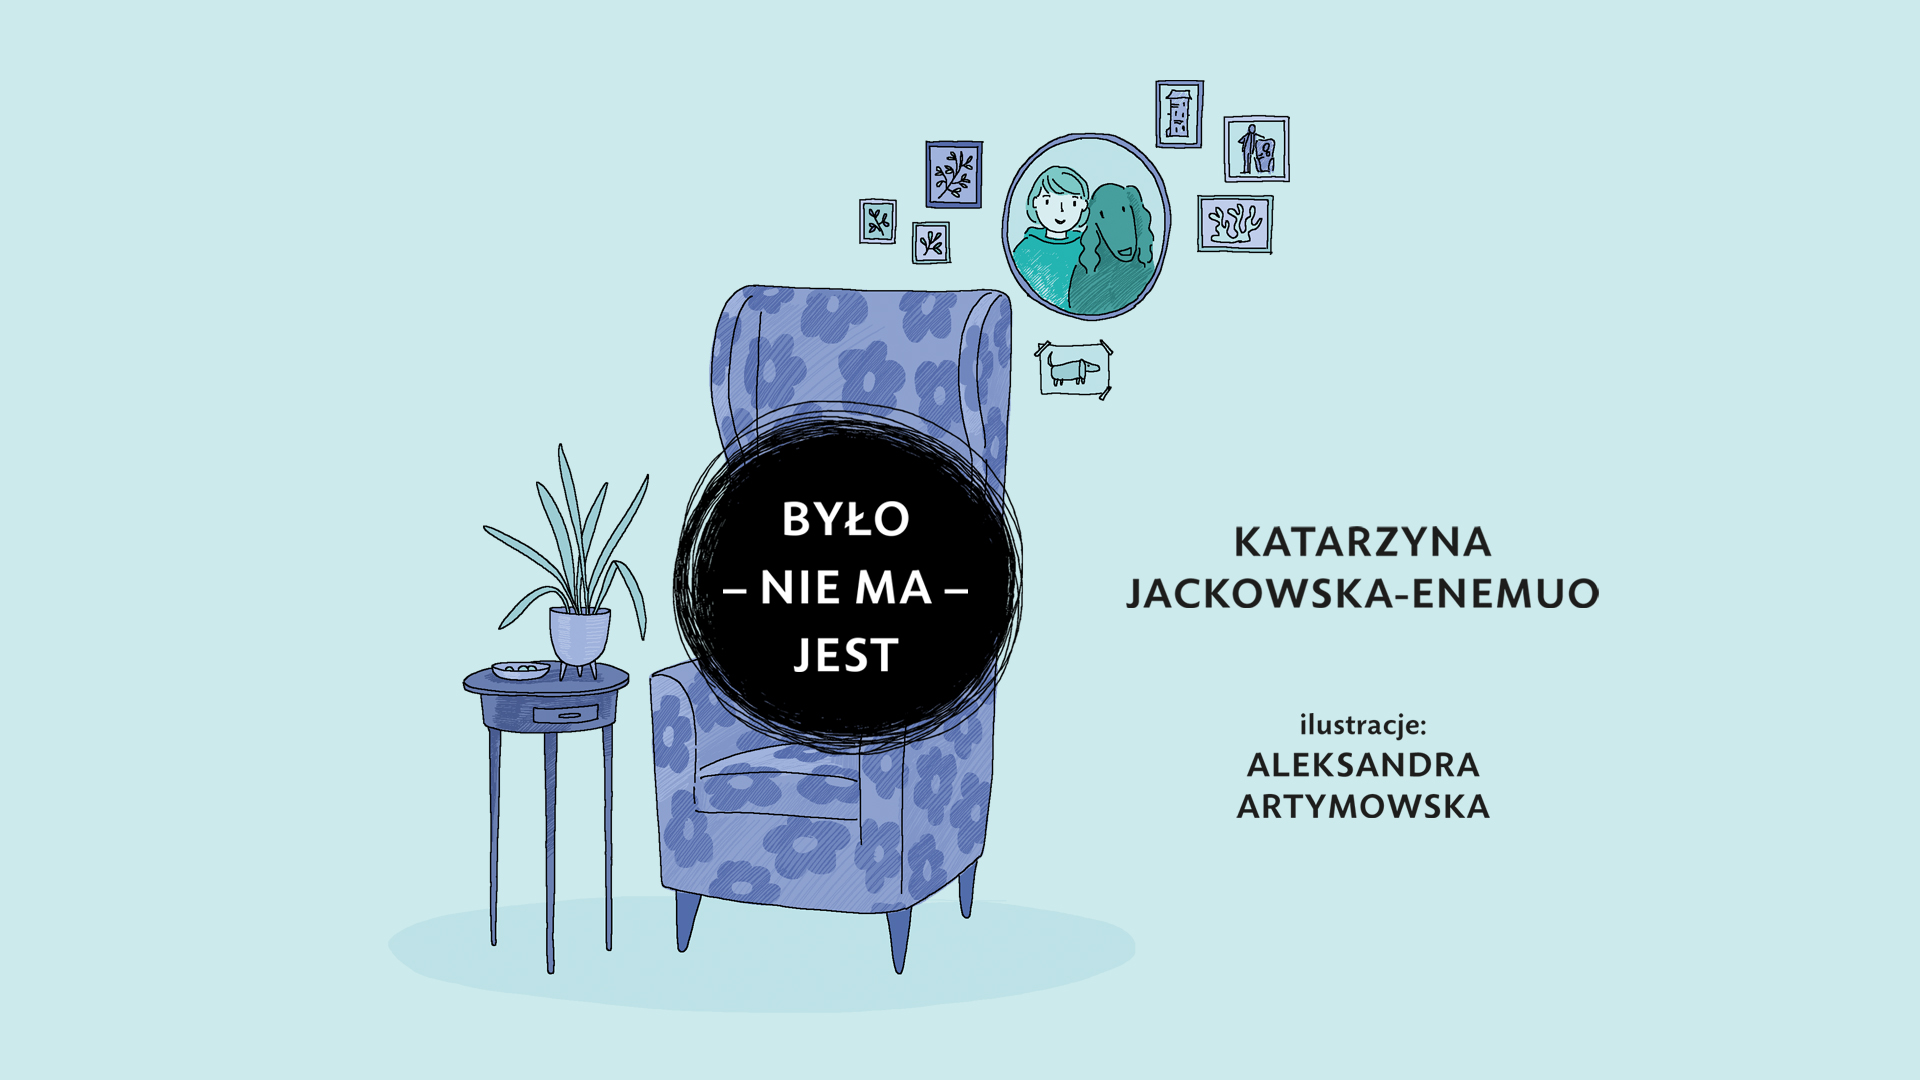 Na fotelu czarna kropka z tytułem opowiadania "Było - nie ma - jest" Katarzyny Jackowskiej-Enemuo i dopiskiem - ilustracje: Aleksandra Artymowska.